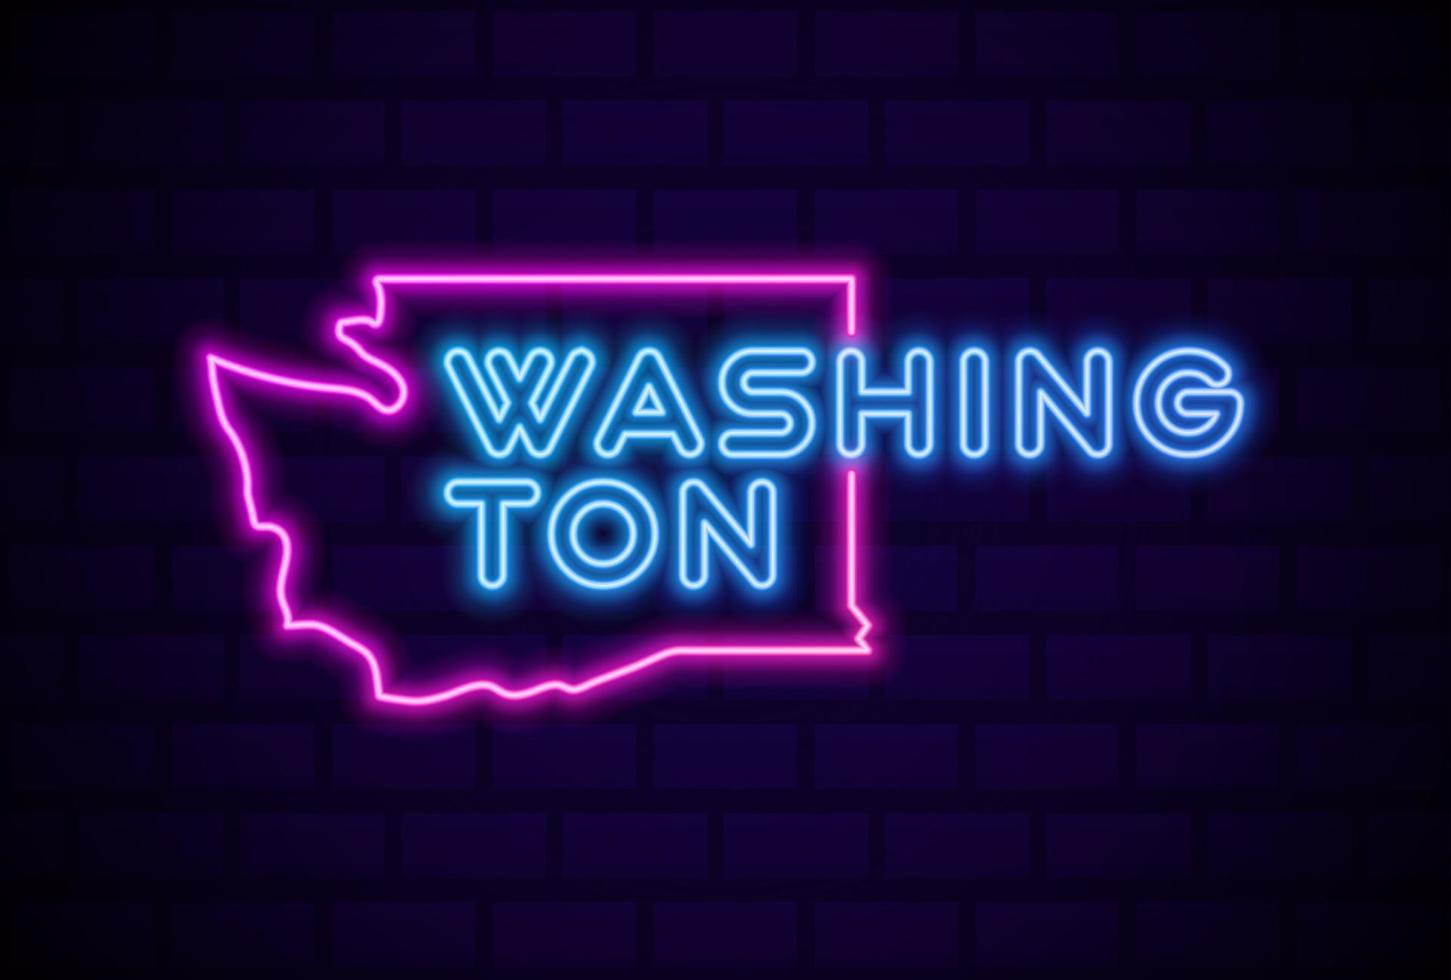 stato di washington usa lampada al neon incandescente segno illustrazione vettoriale realistico bagliore muro di mattoni blu